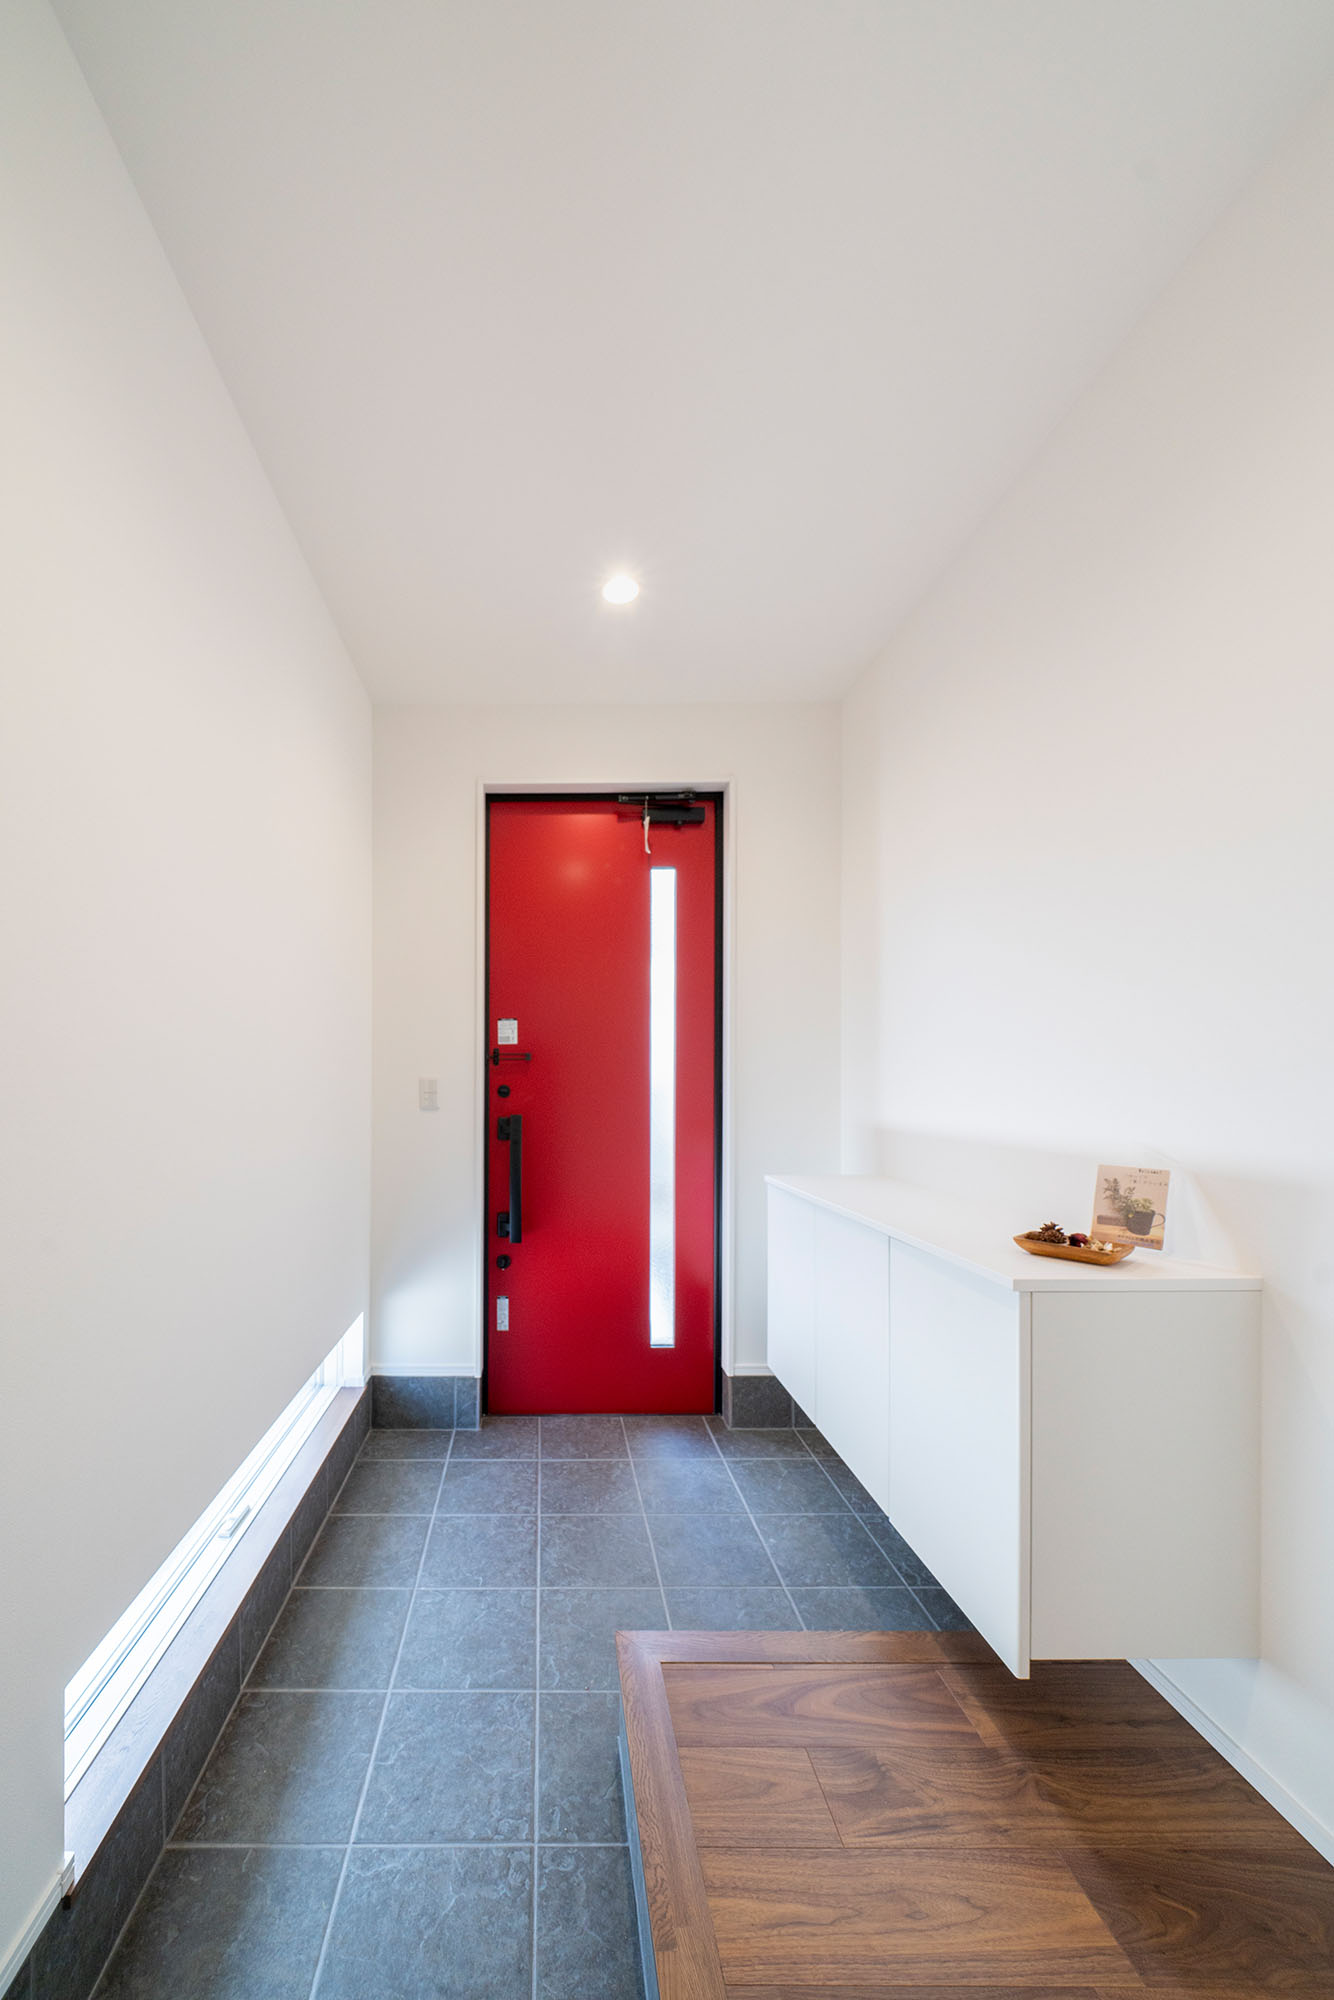 白と木を基調としたシンプルな空間に、赤い玄関ドアが映える